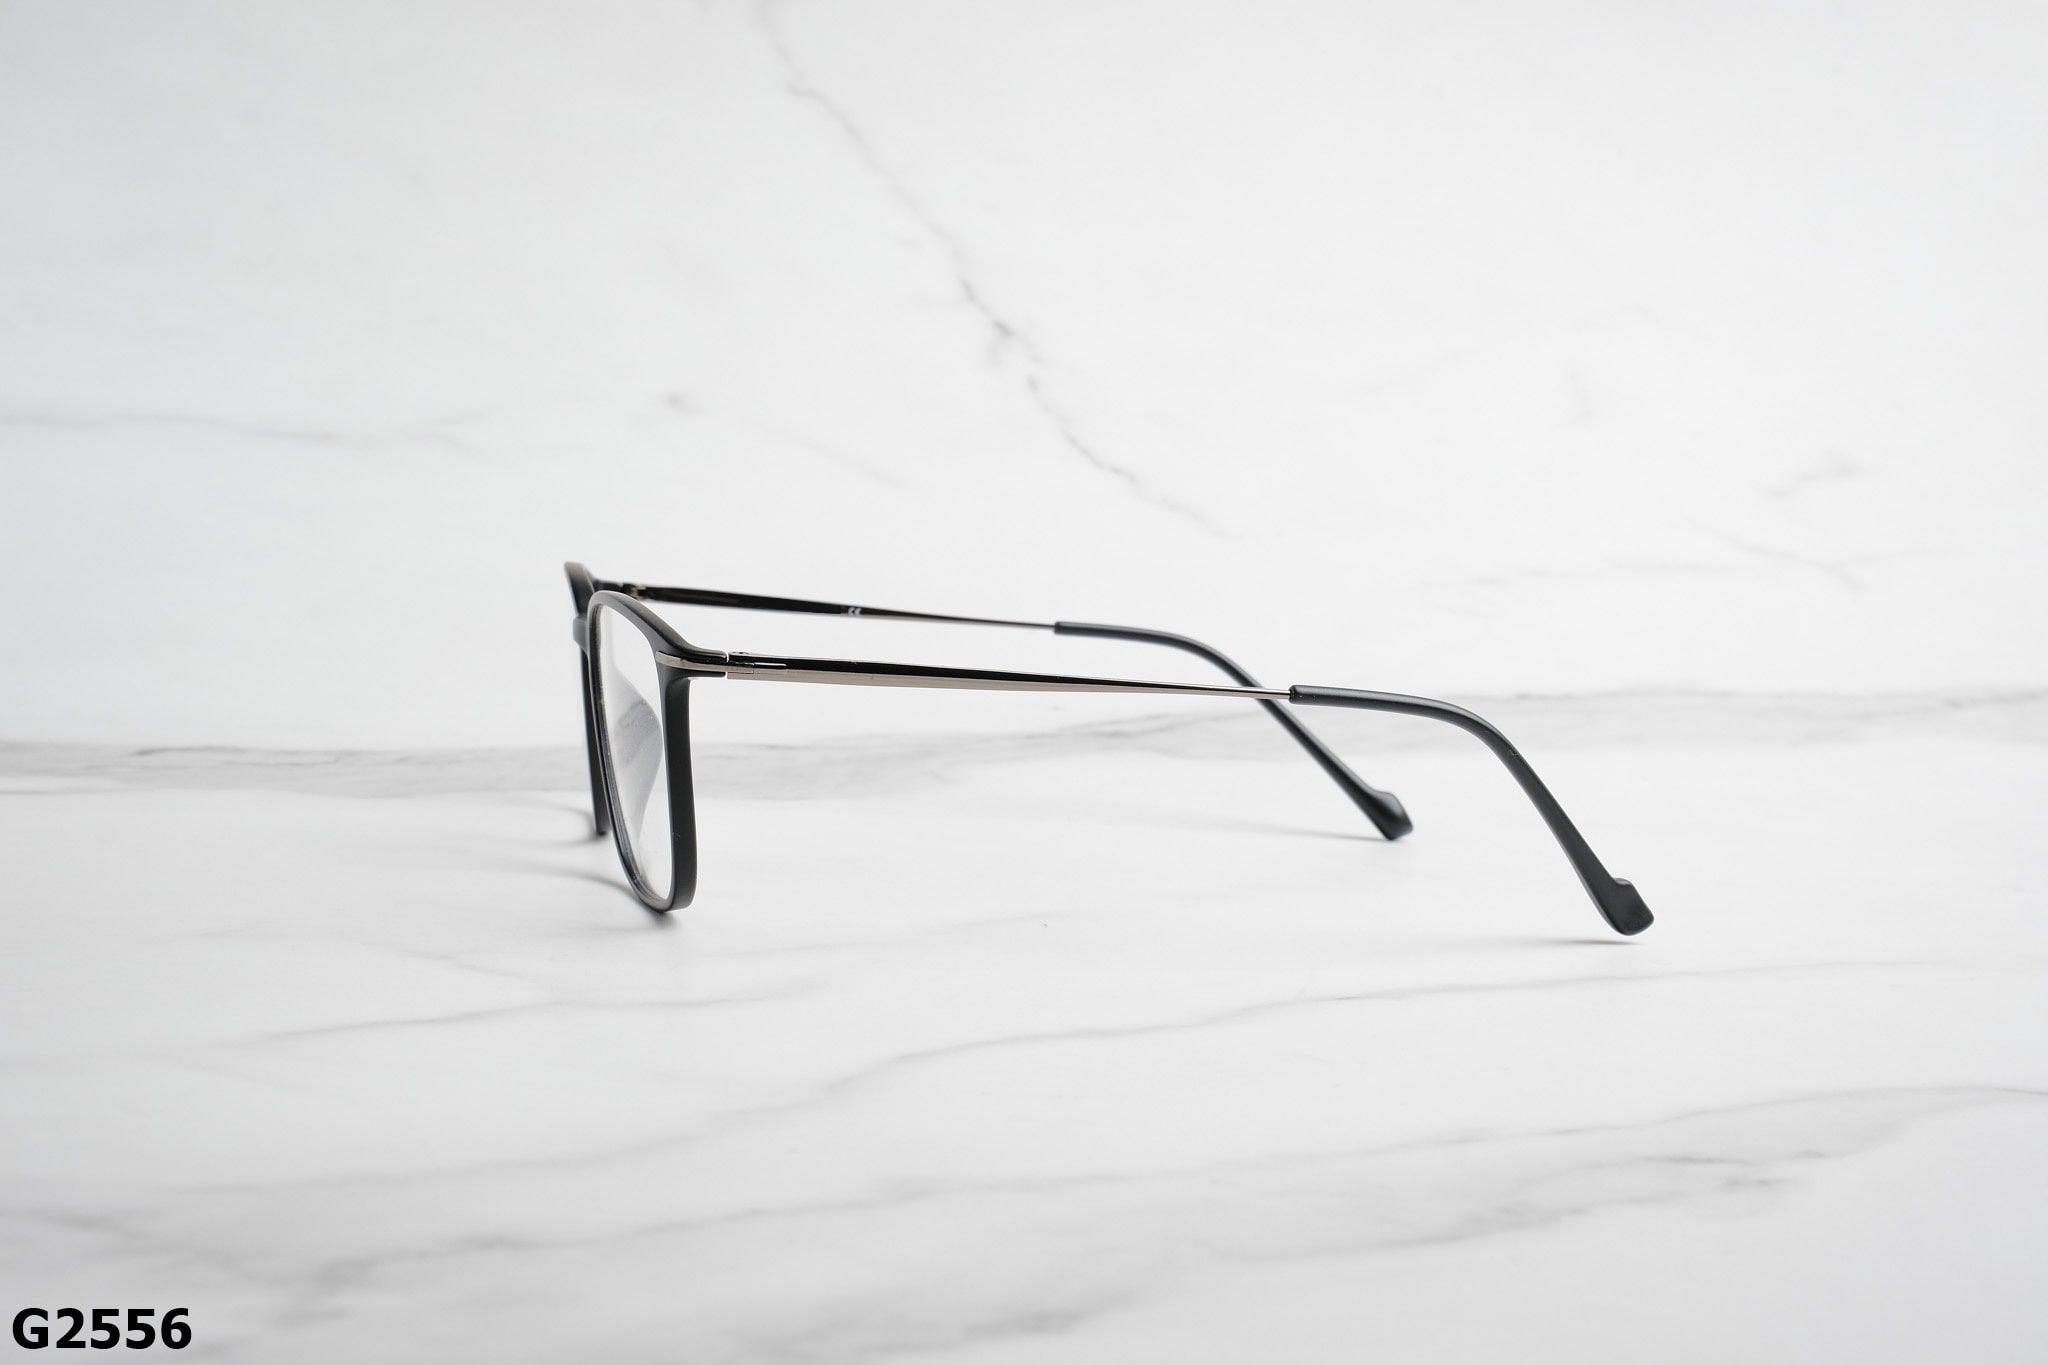  Rex-ton Eyewear - Glasses - G2556 